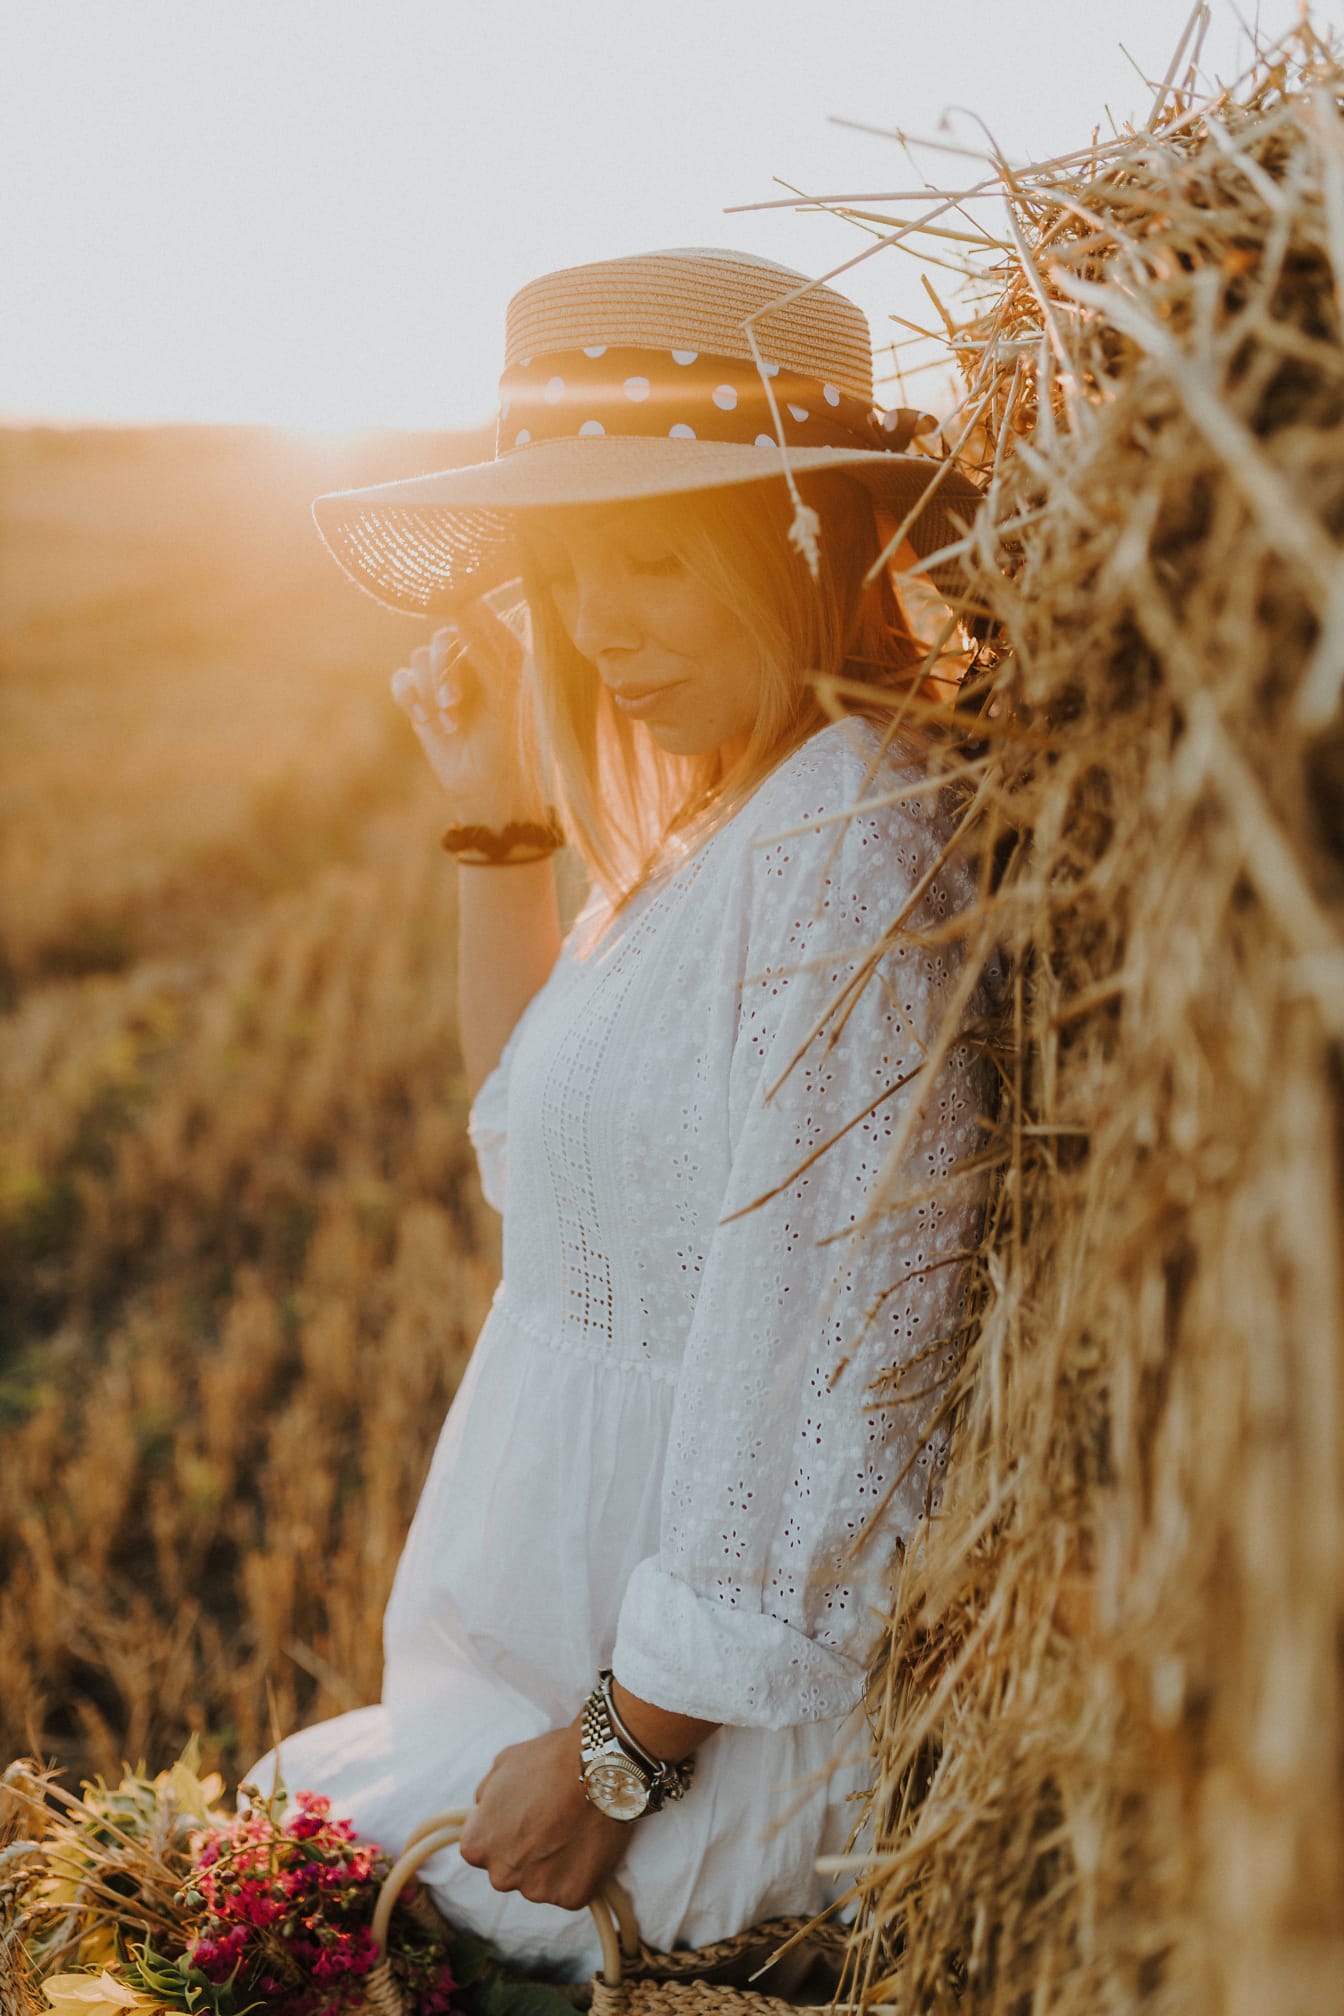 小麦畑の干し草の山で帽子をかぶったかなり若い女性